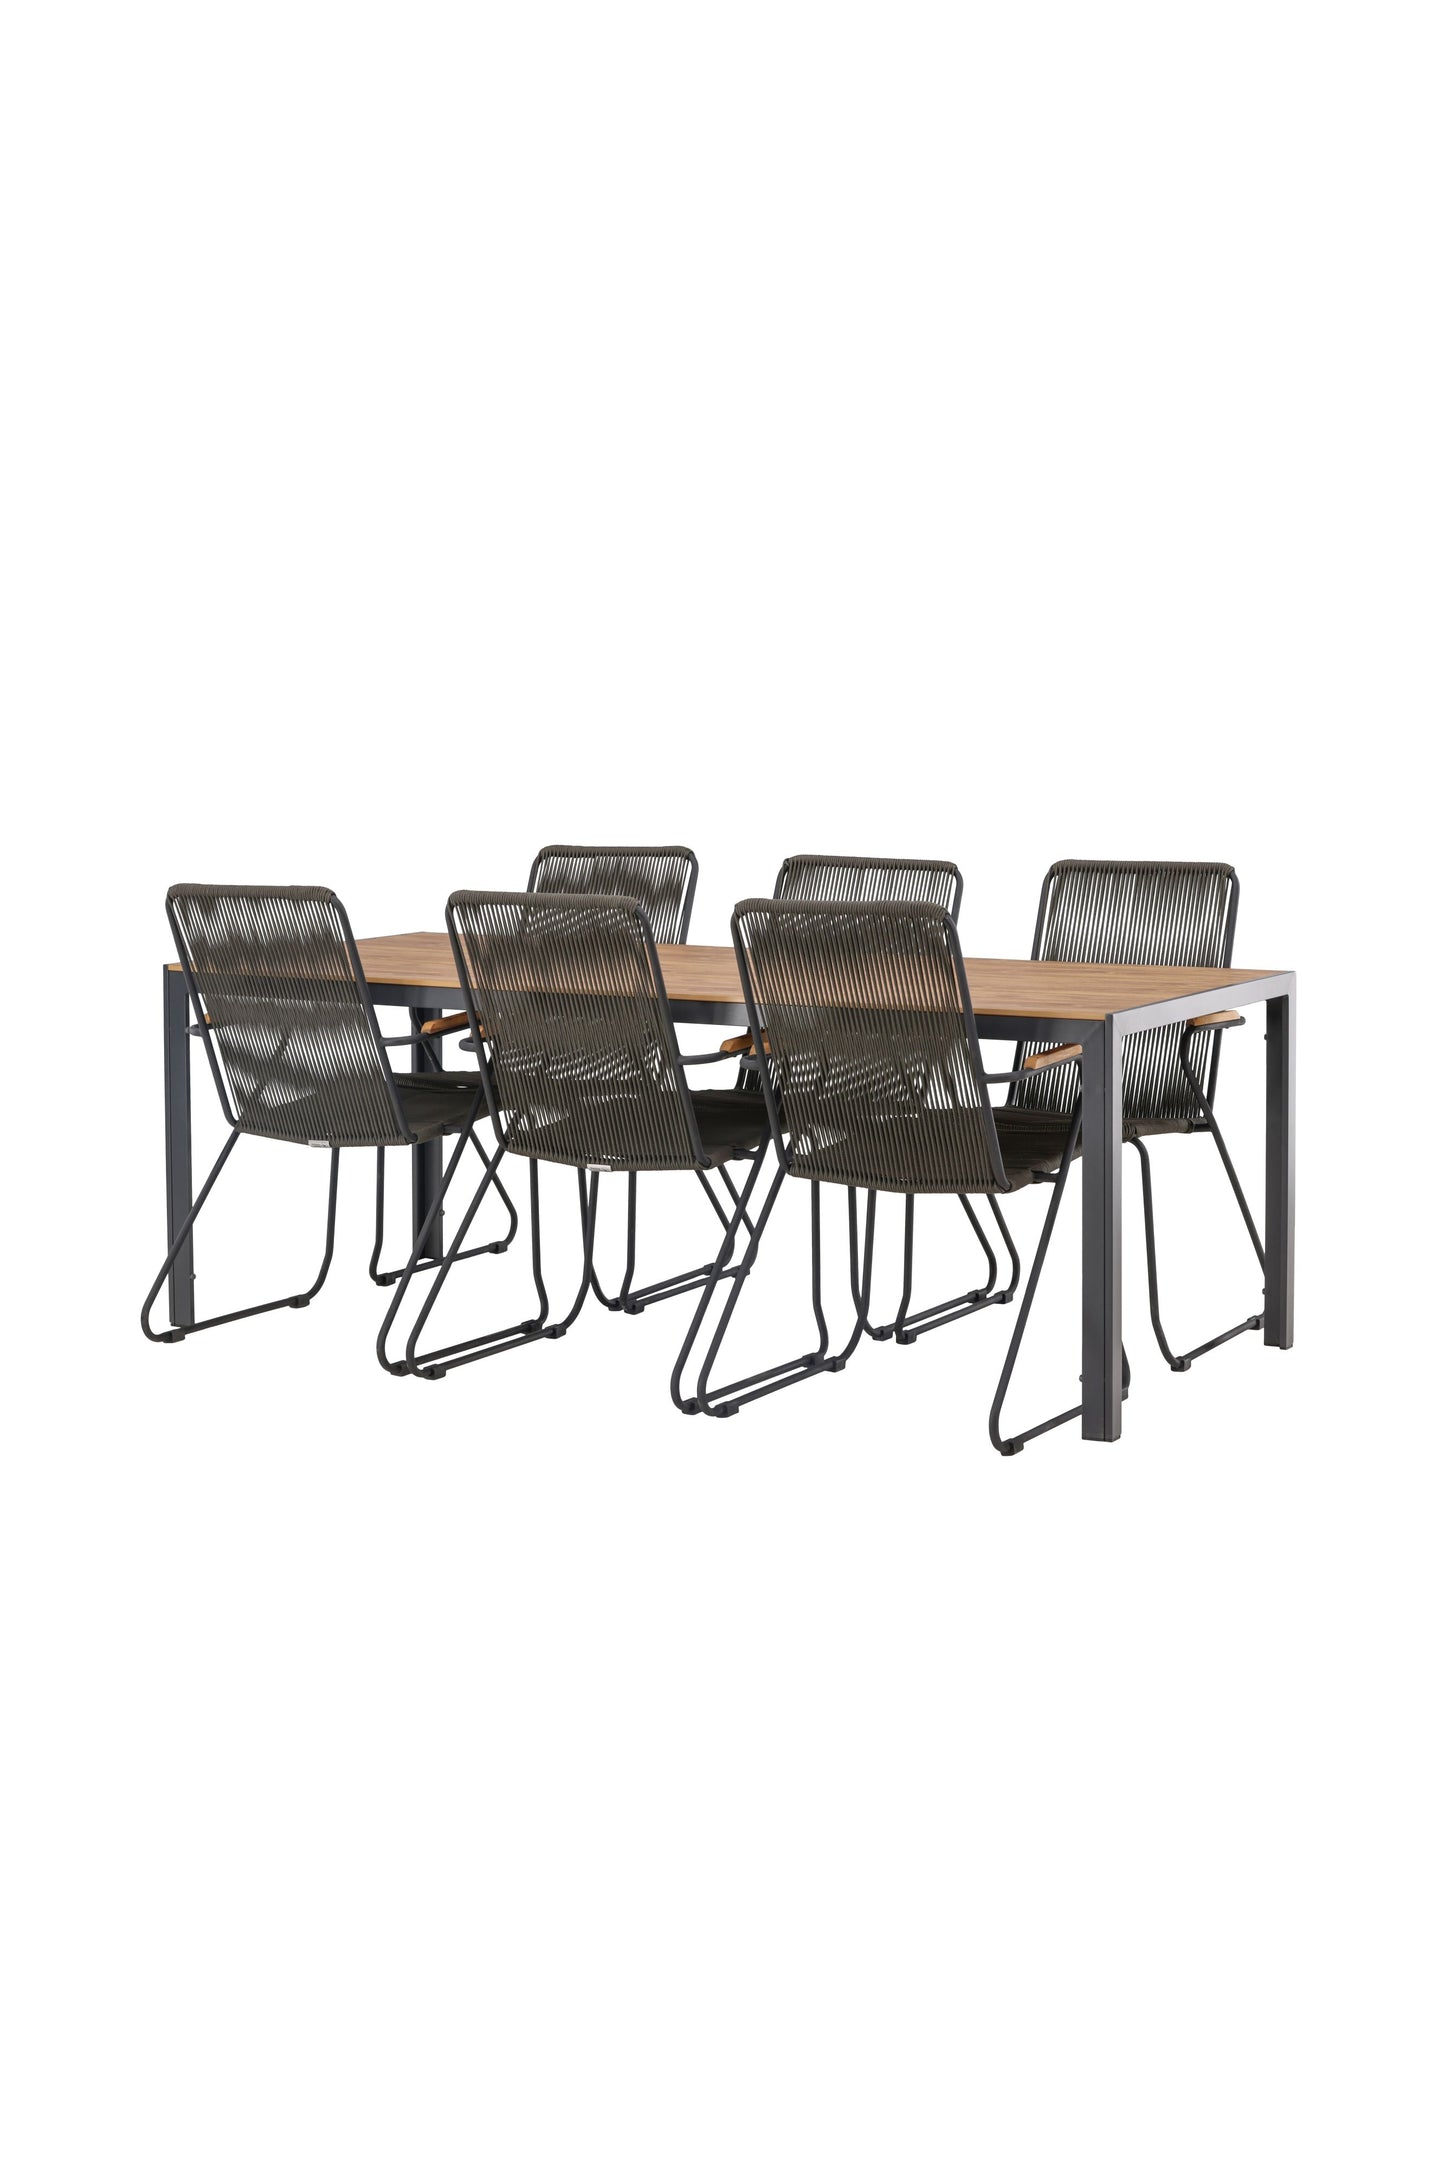 Break - Spisebord, Aluminium - Sort / Natur Rektangulær 90*200* + Bois stol Stål - Sort / Mørkegråt Reb